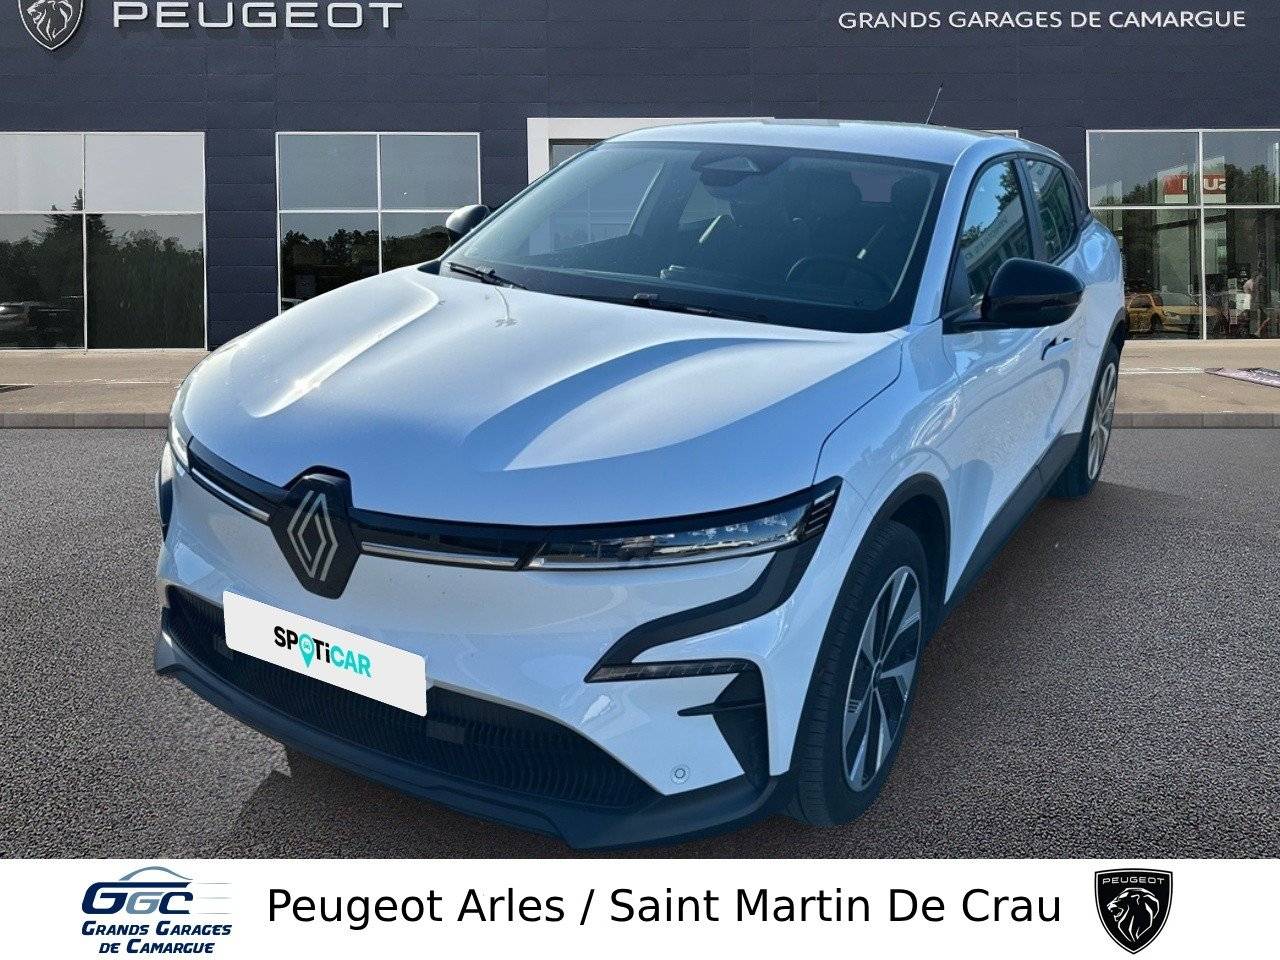 RENAULT MÉGANE | Megane E-Tech EV60 130ch super charge occasion - Peugeot Arles